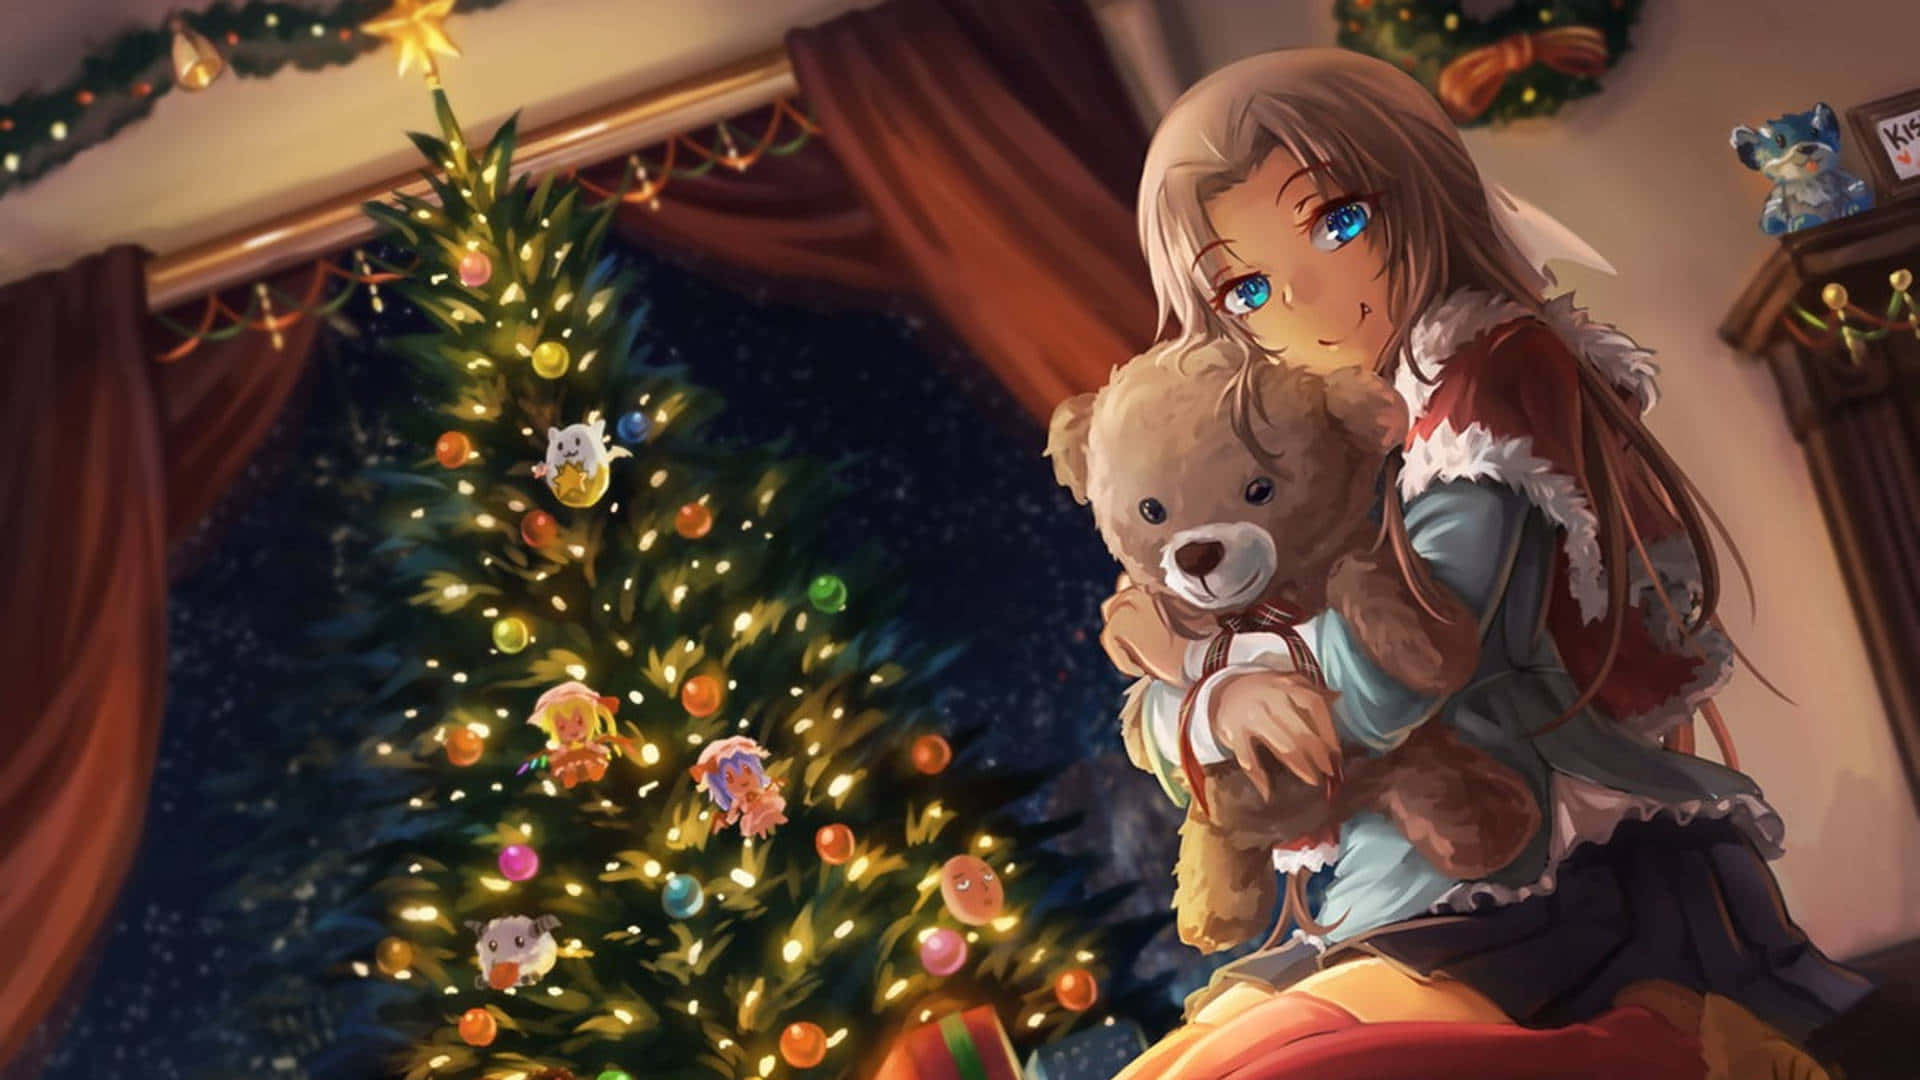 Einfestliches Anime-weihnachtsmotiv Mit Schneebedecktem Baum Und Liebenswerten Charakteren, Die Das Fest Feiern.